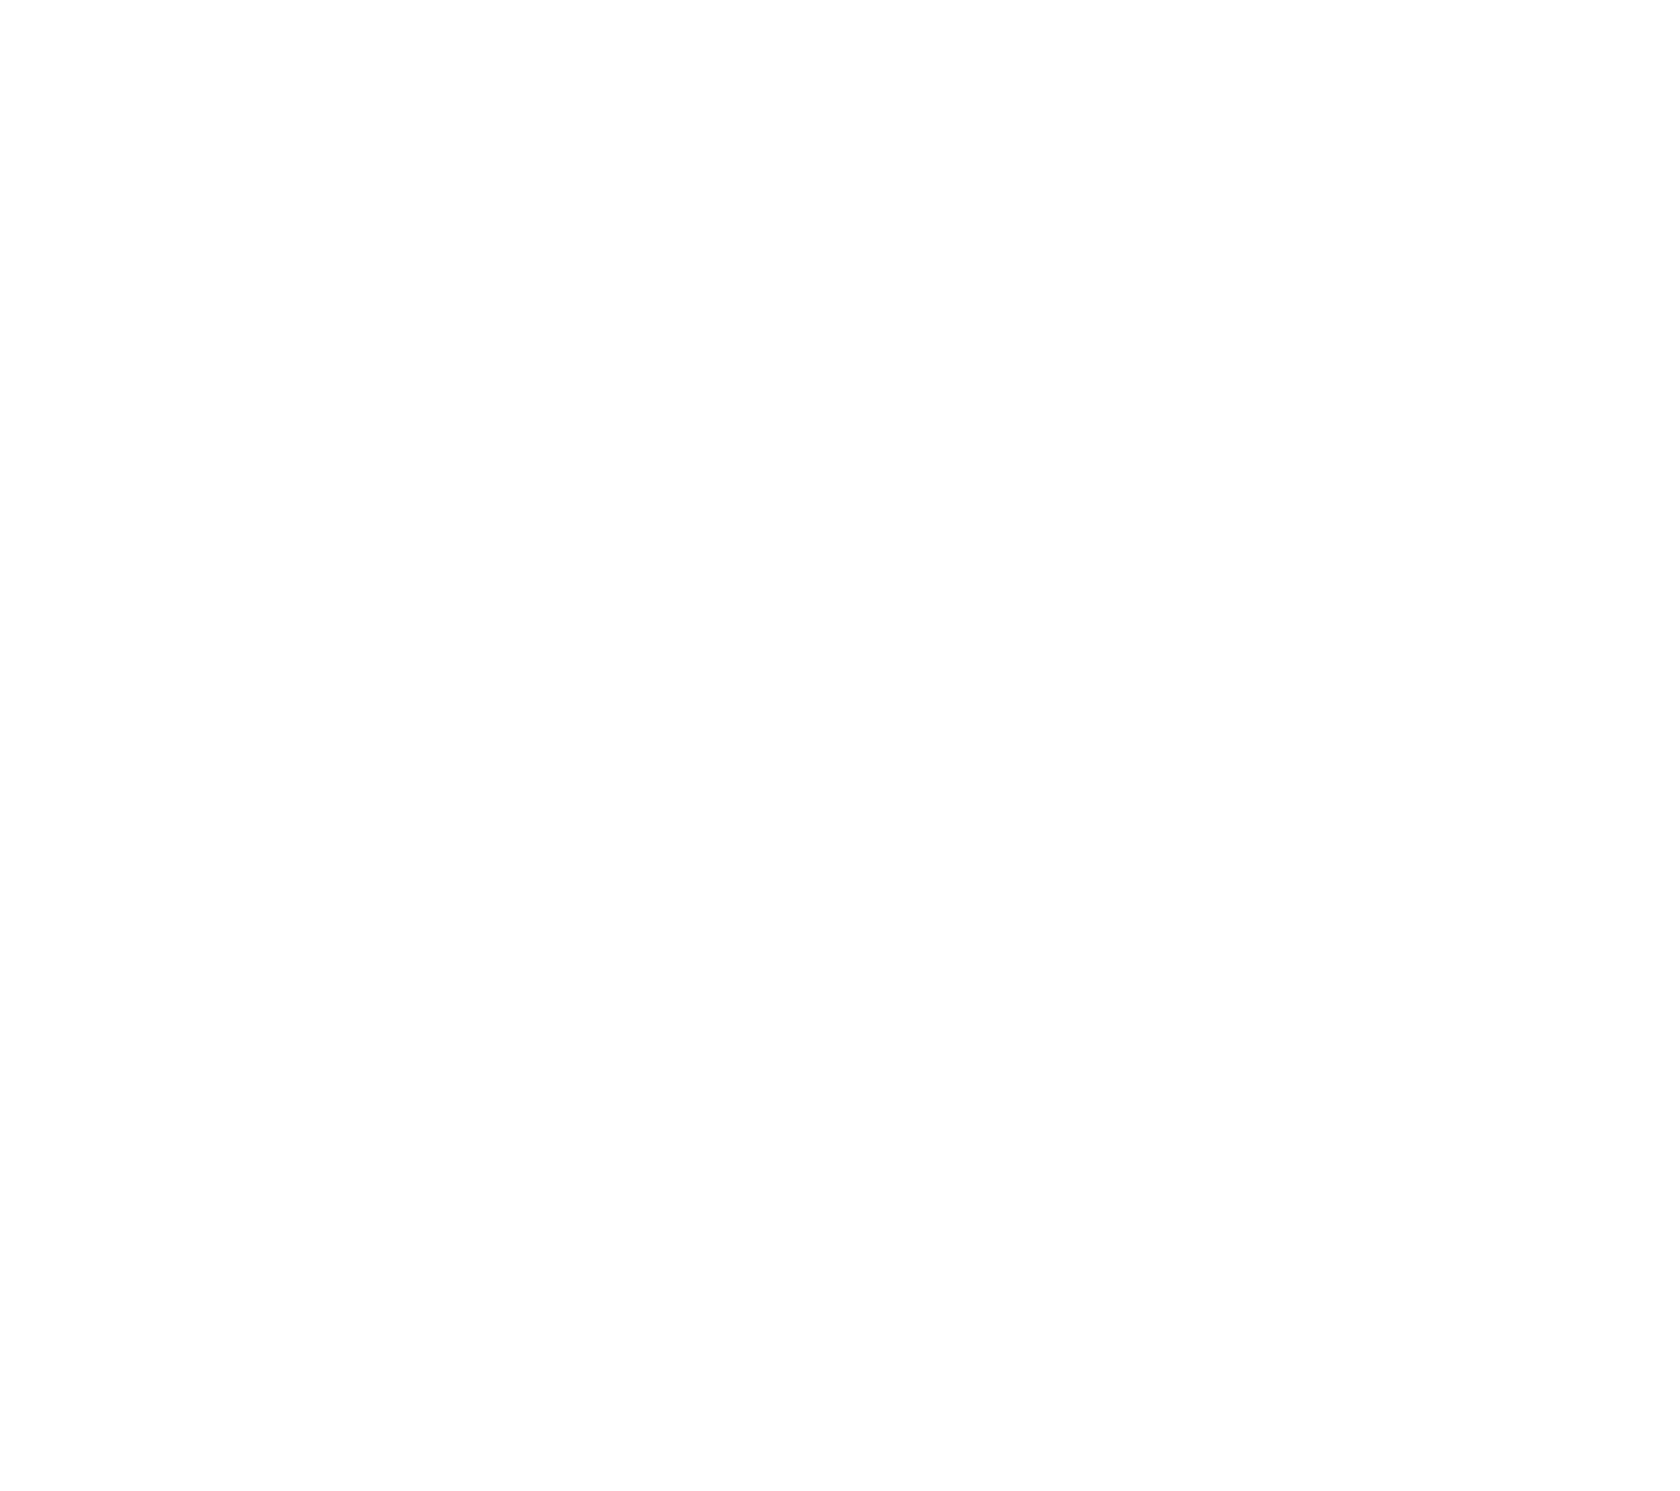 Объемные буквы из ПВХ и молочного акрила с лицевой подсветкой светодиодными модулями. Баннерный короб с лицевой подсветкой светодиодными модулями.